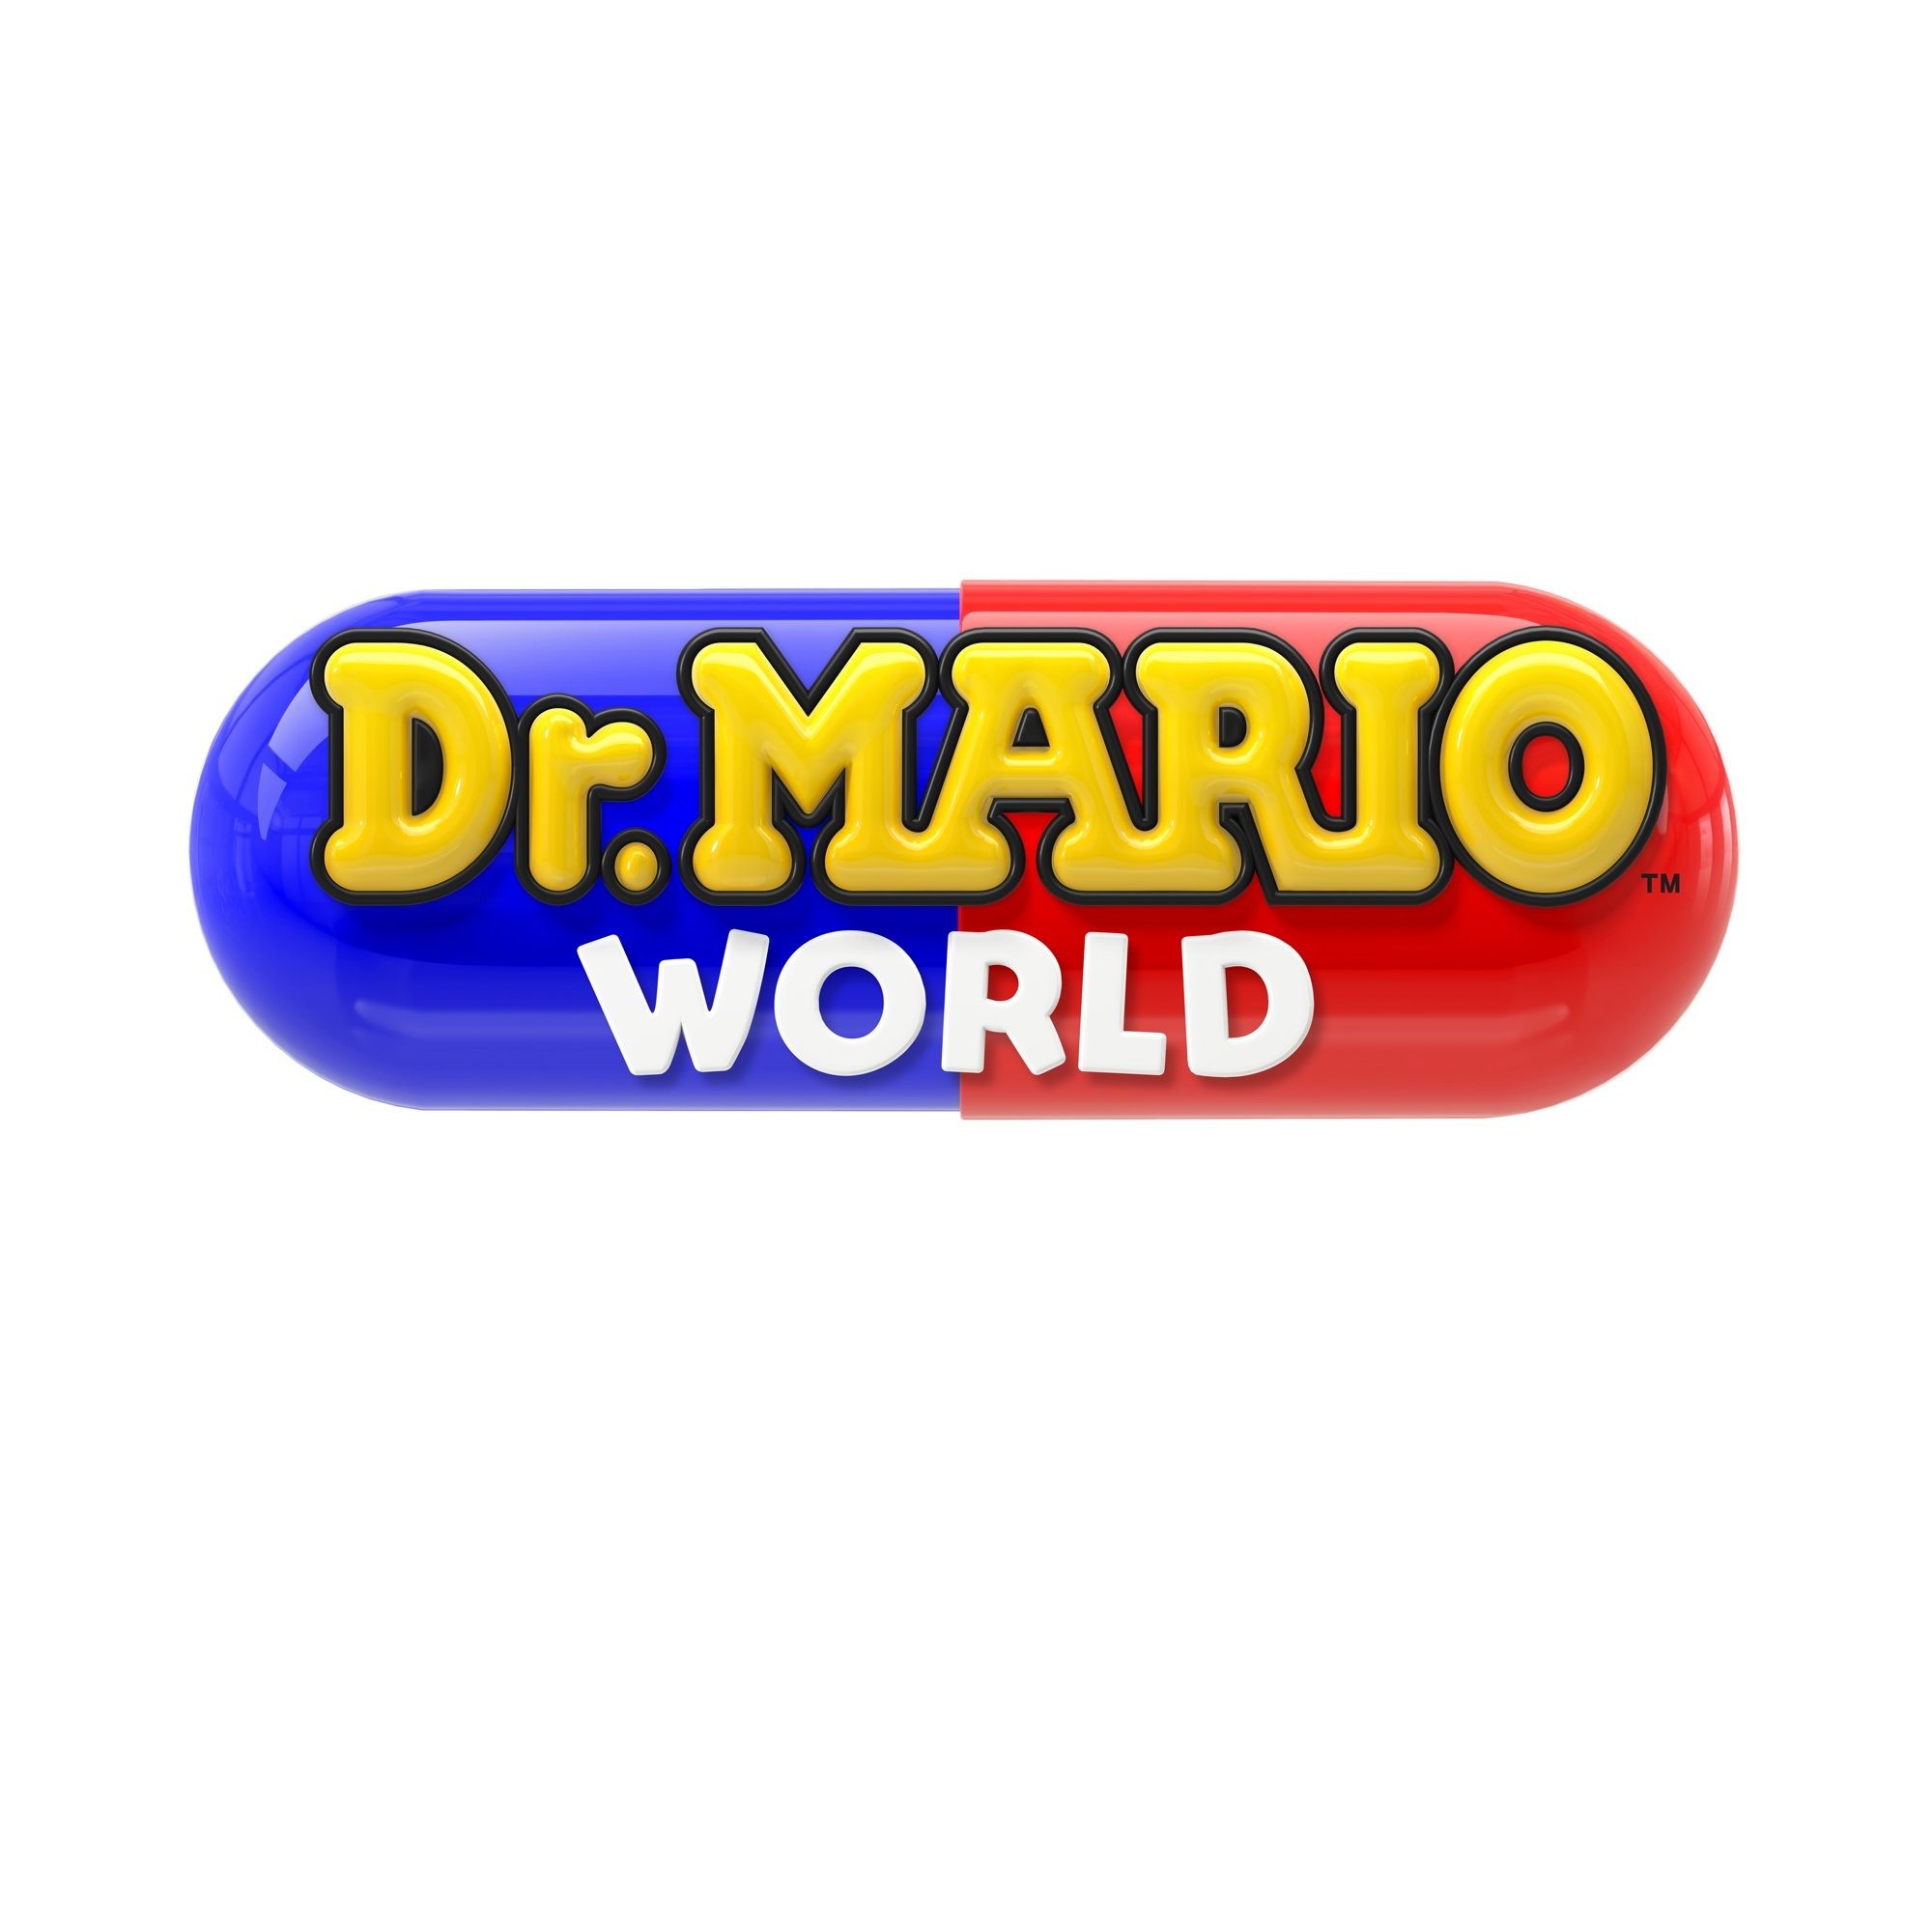 dr. mario world